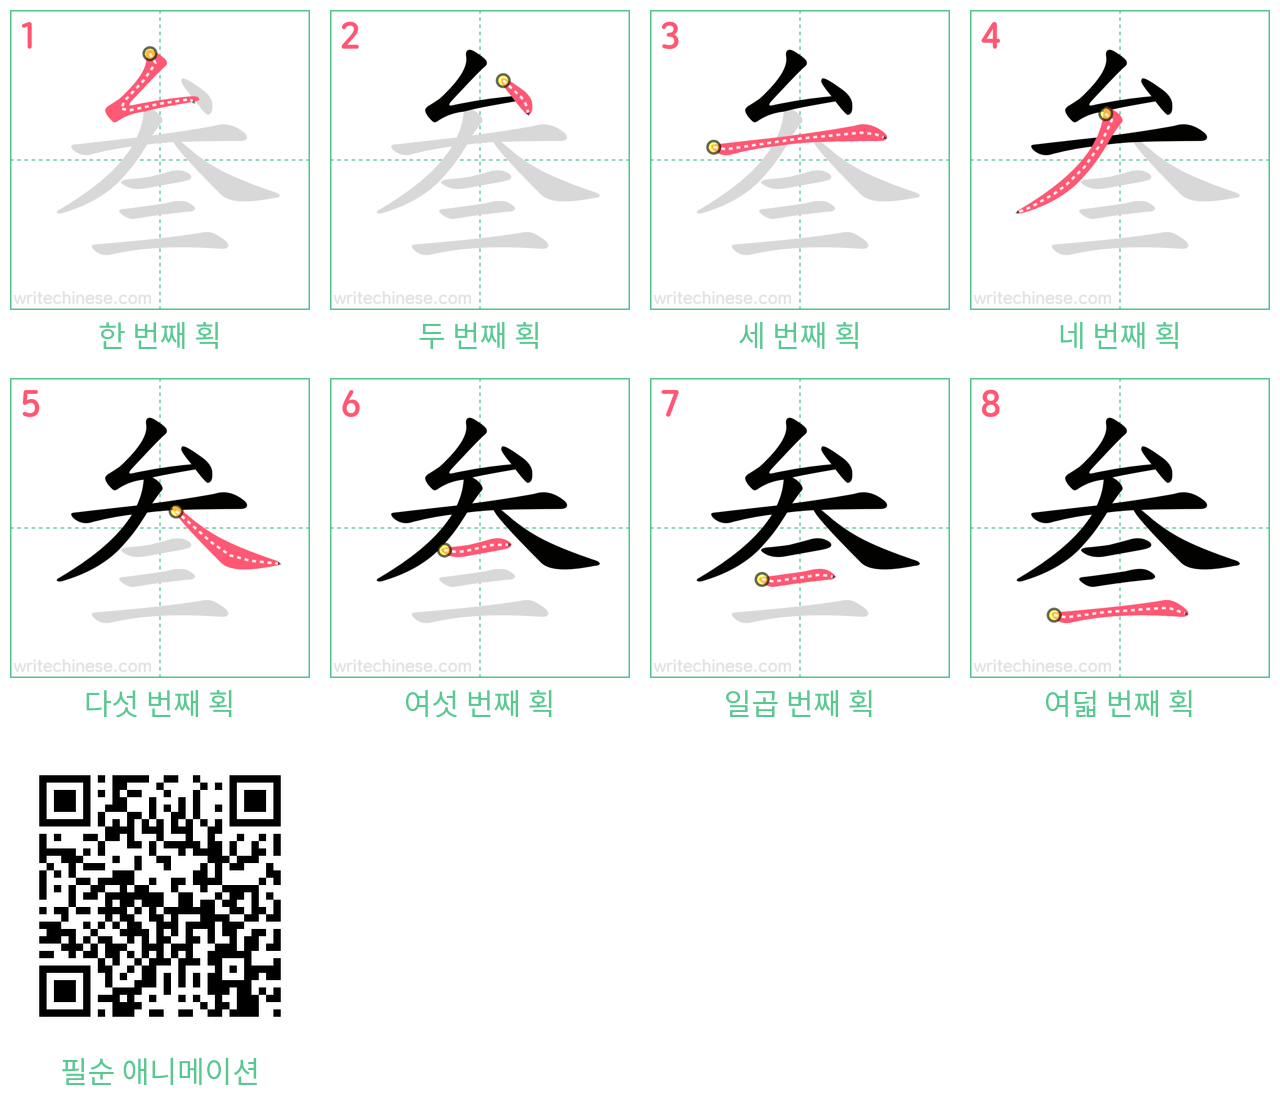 叁 step-by-step stroke order diagrams